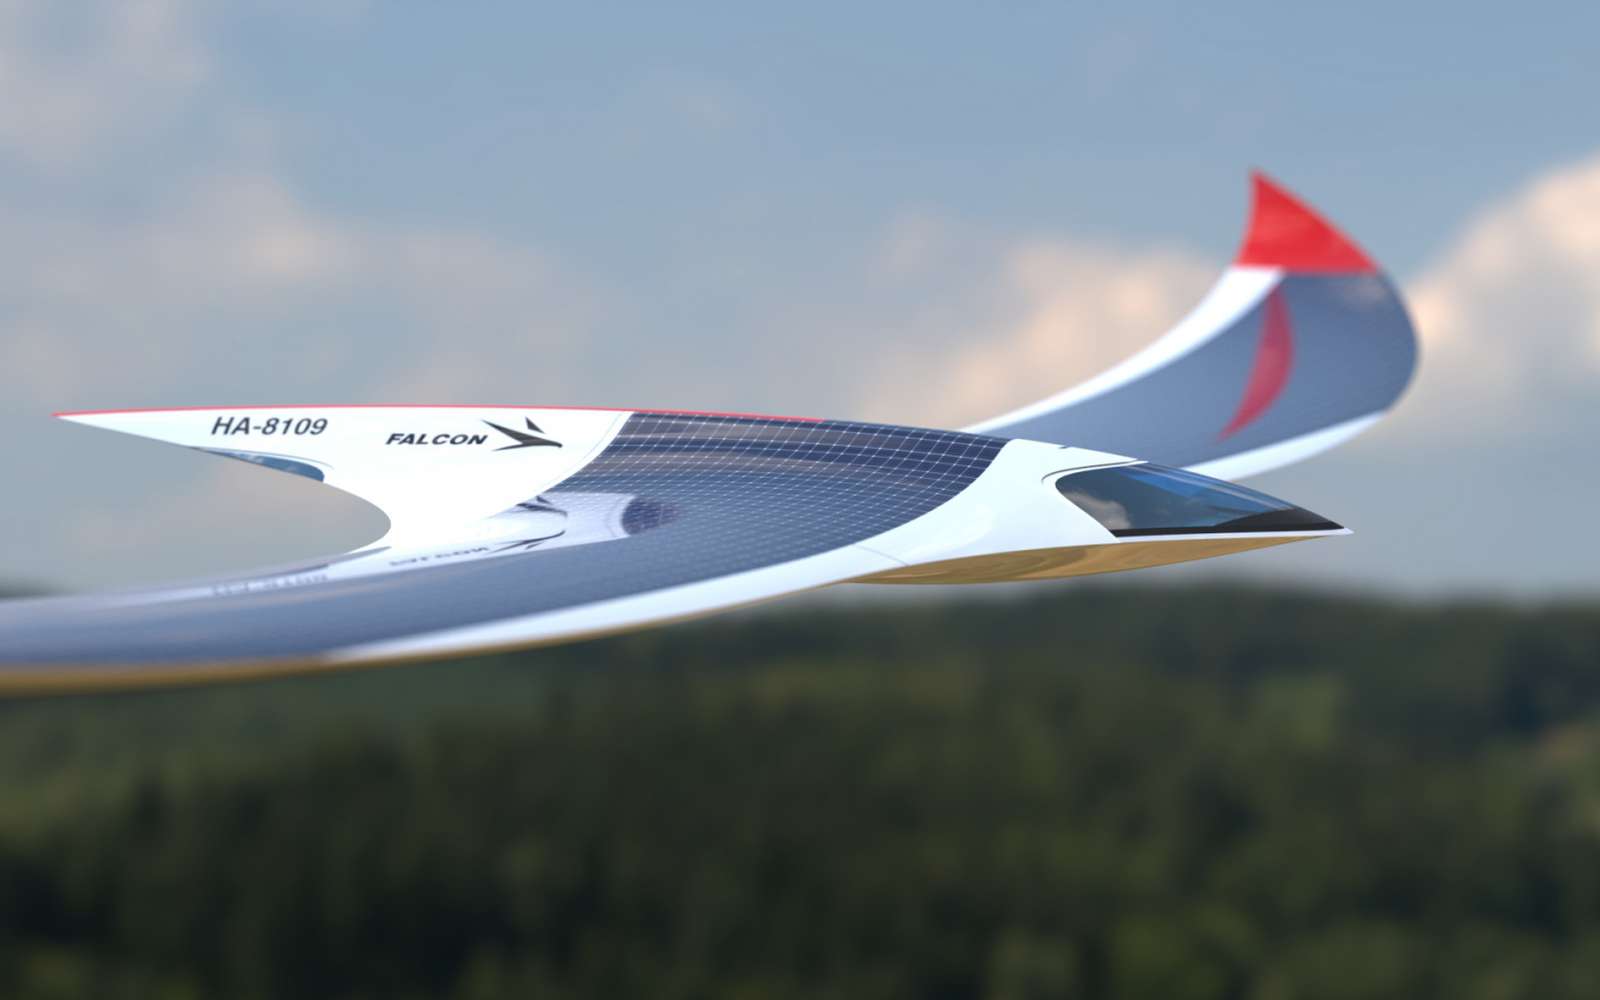 Séduisant, ce concept d’avion à énergie solaire conserve une grande part de mystère. © Lasko Design